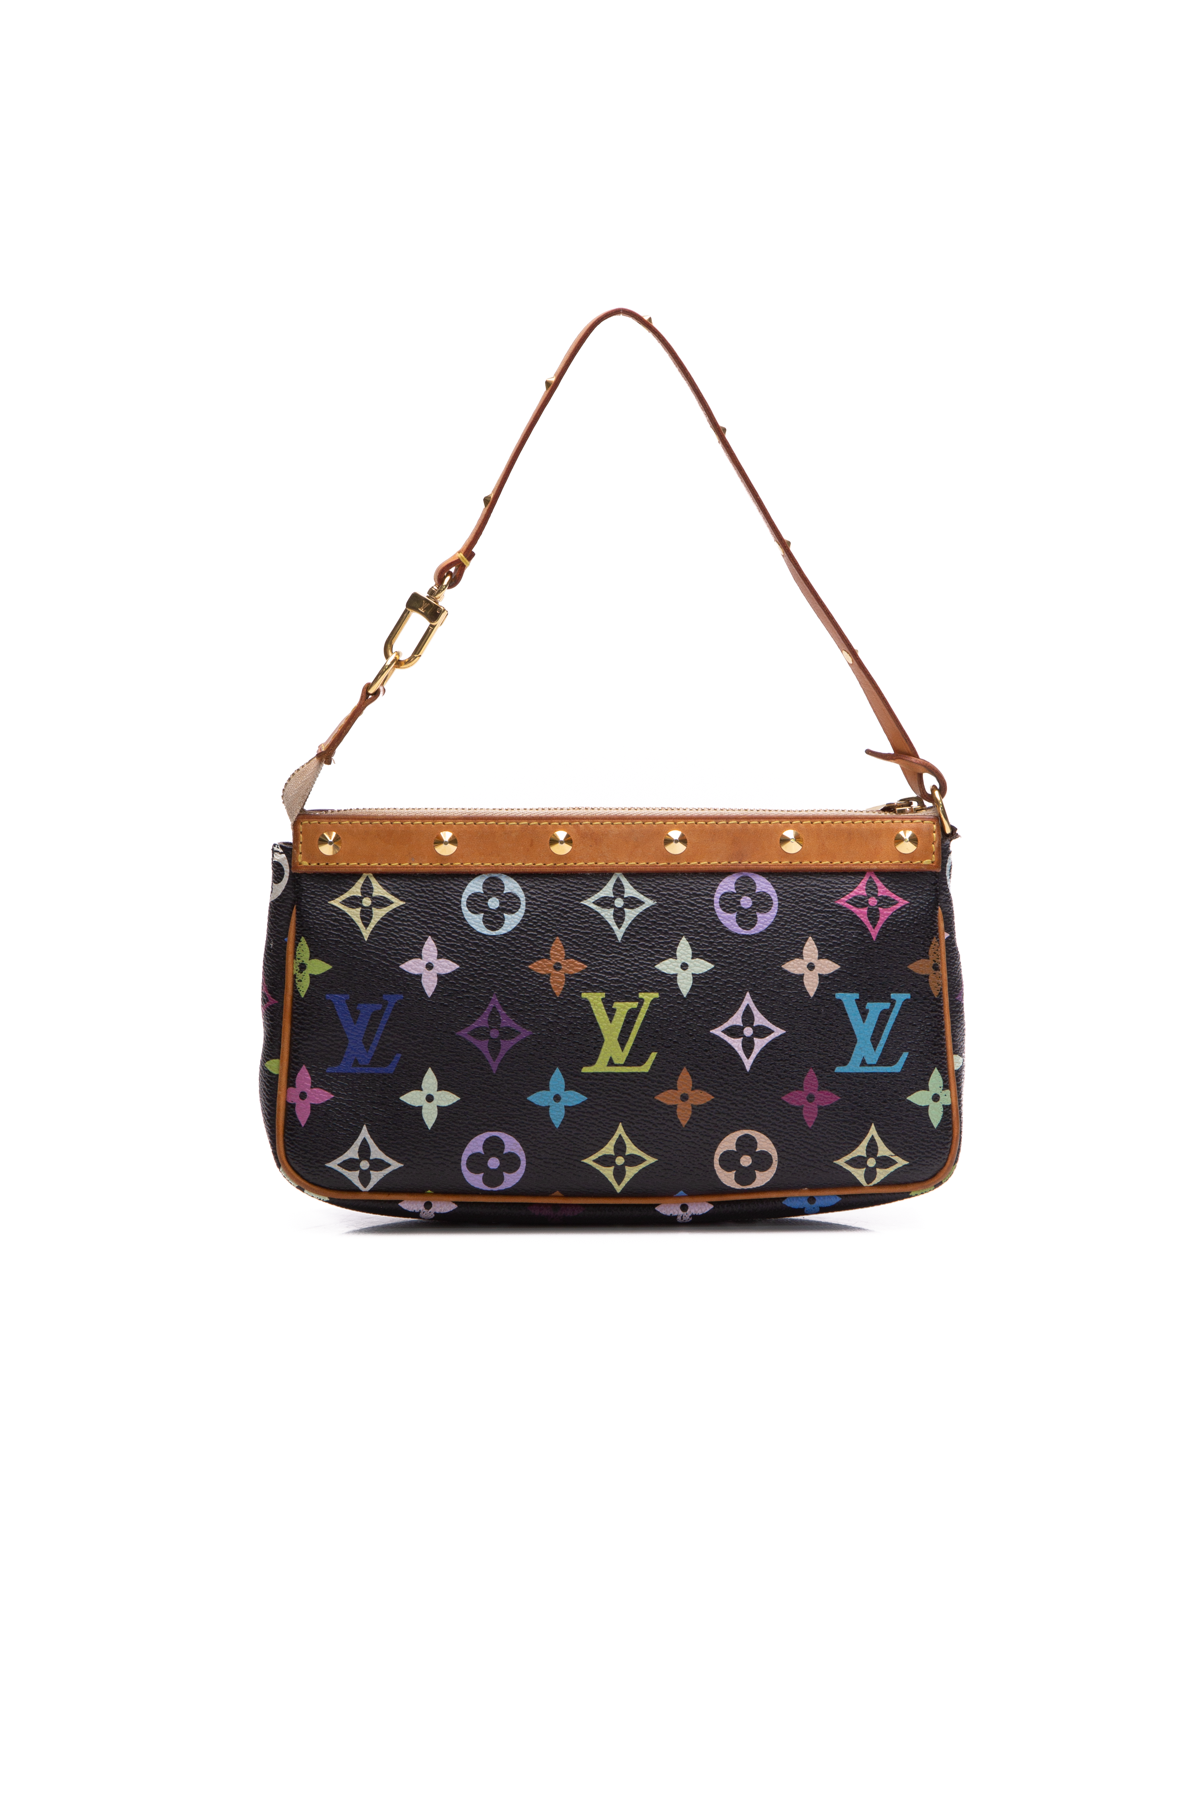 Louis Vuitton My LV World Tour Multi Pochette Accessoires Bag - Couture USA